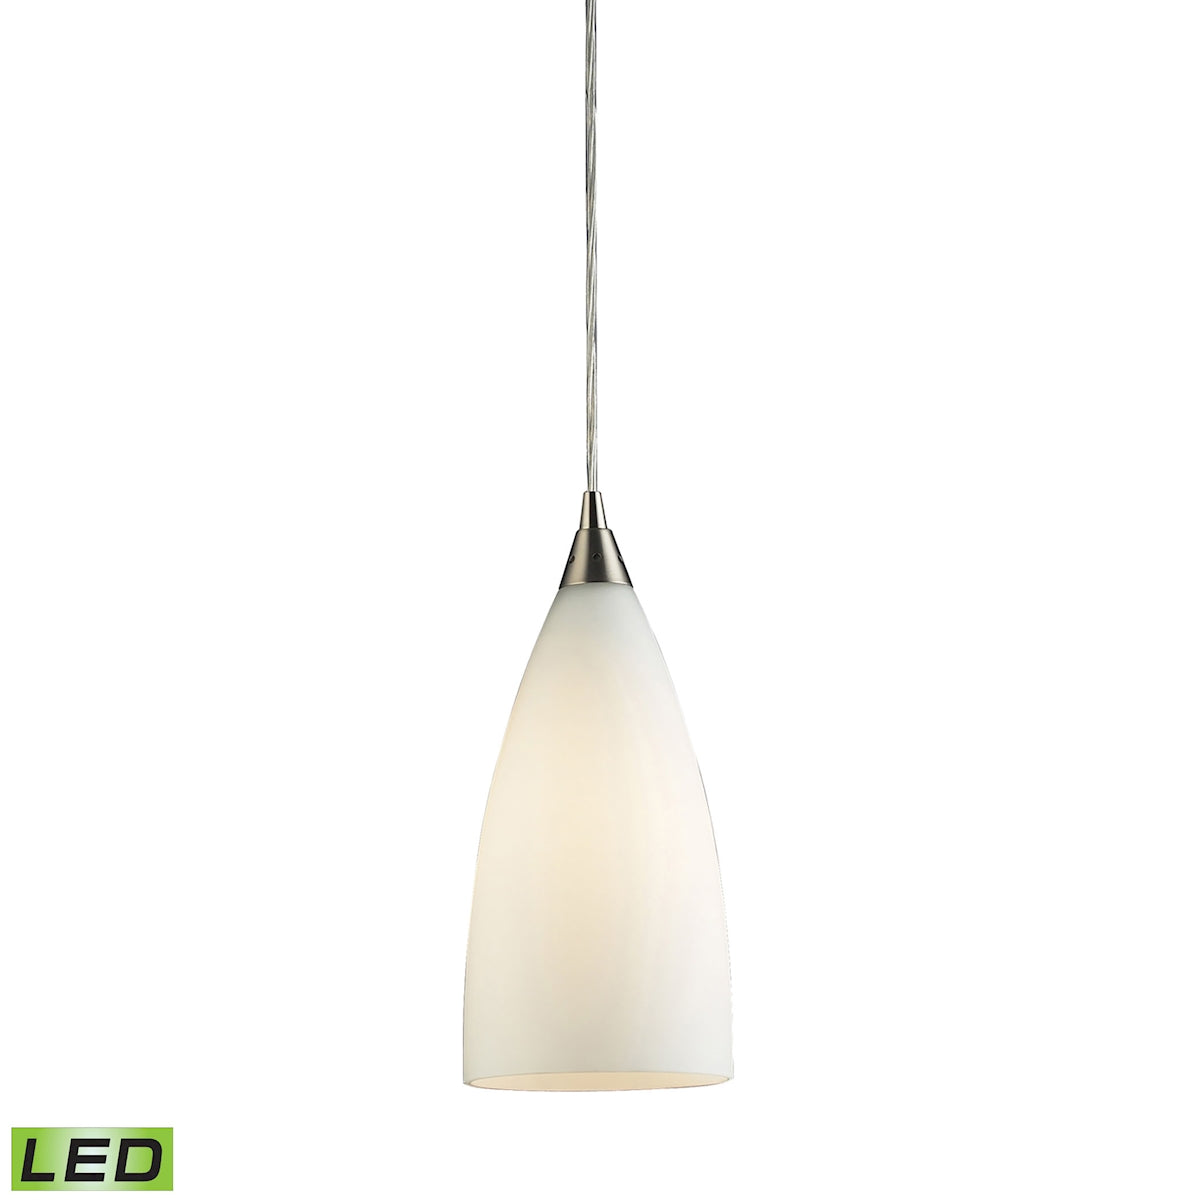 ELK Lighting 2580/1-LED Vesta 1-Light Mini Pendant in Satin Nickel with White Glass - Includes LED Bulb